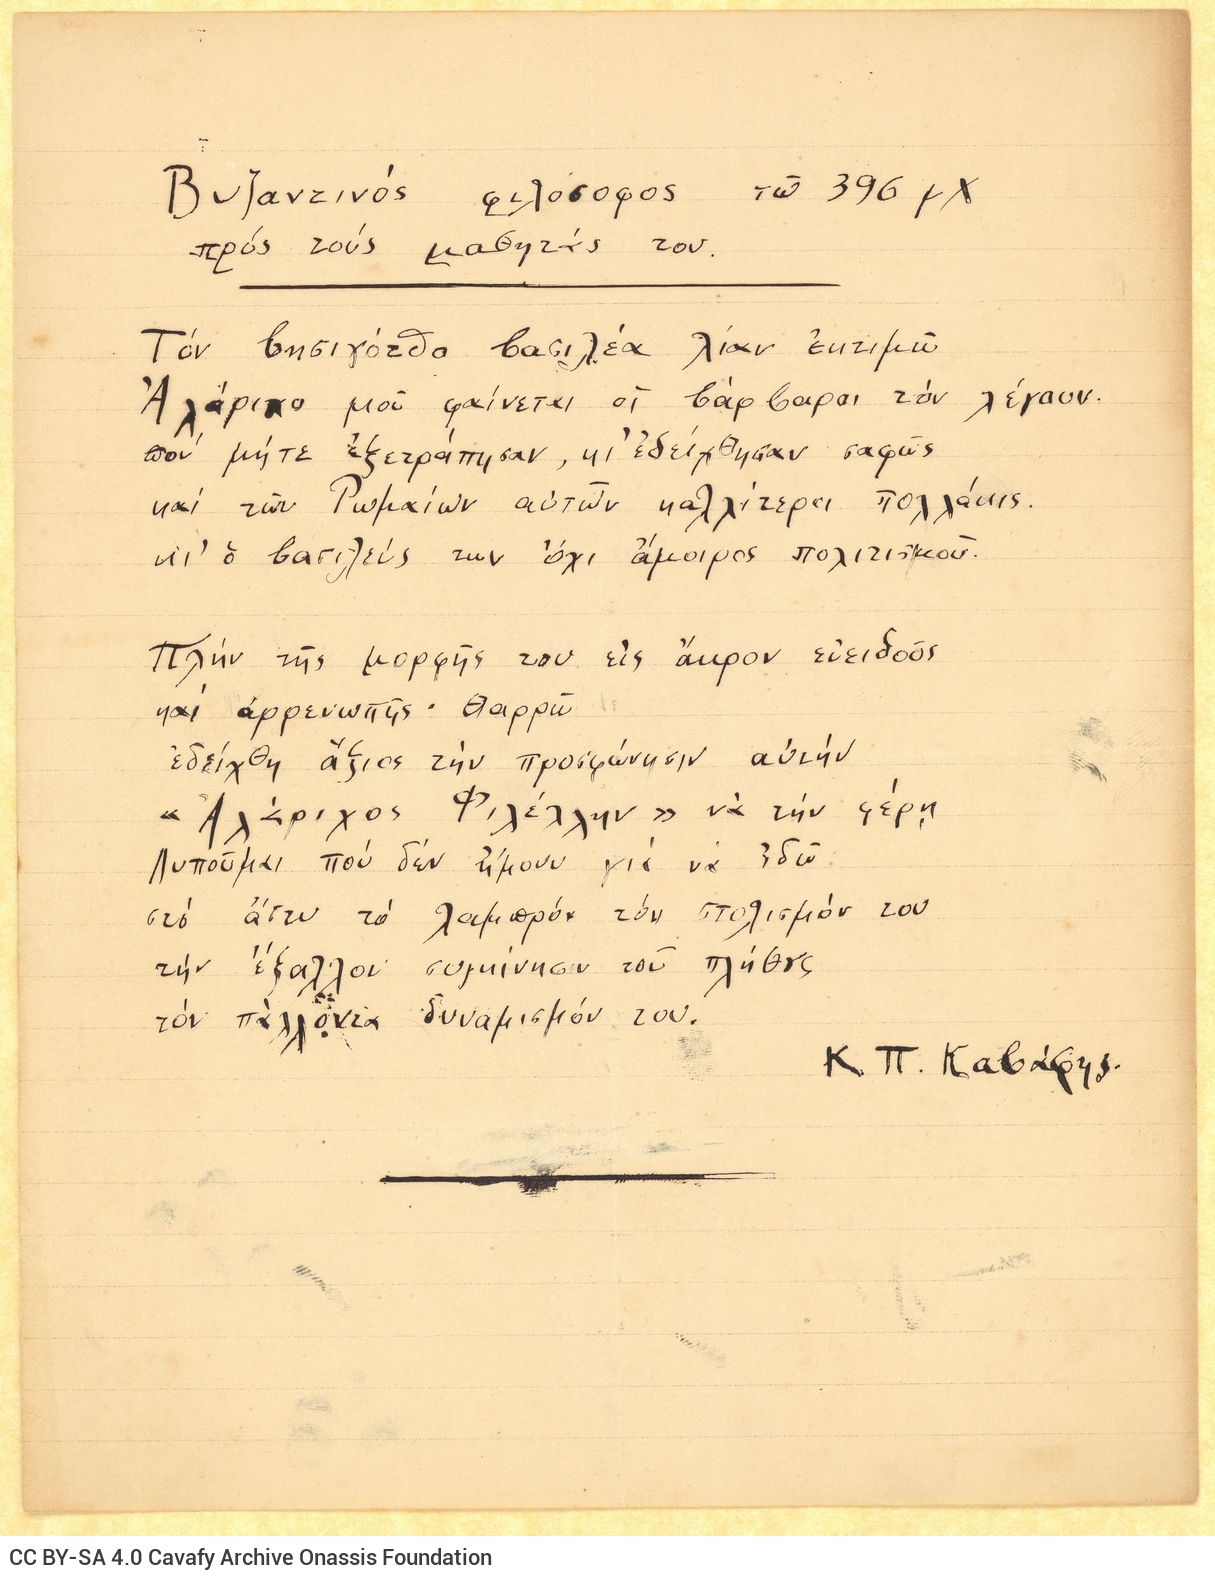 Χειρόγραφο ποίημα («Βυζαντινός φιλόσοφος τω 396 μ.Χ. προς τους μαθητάς